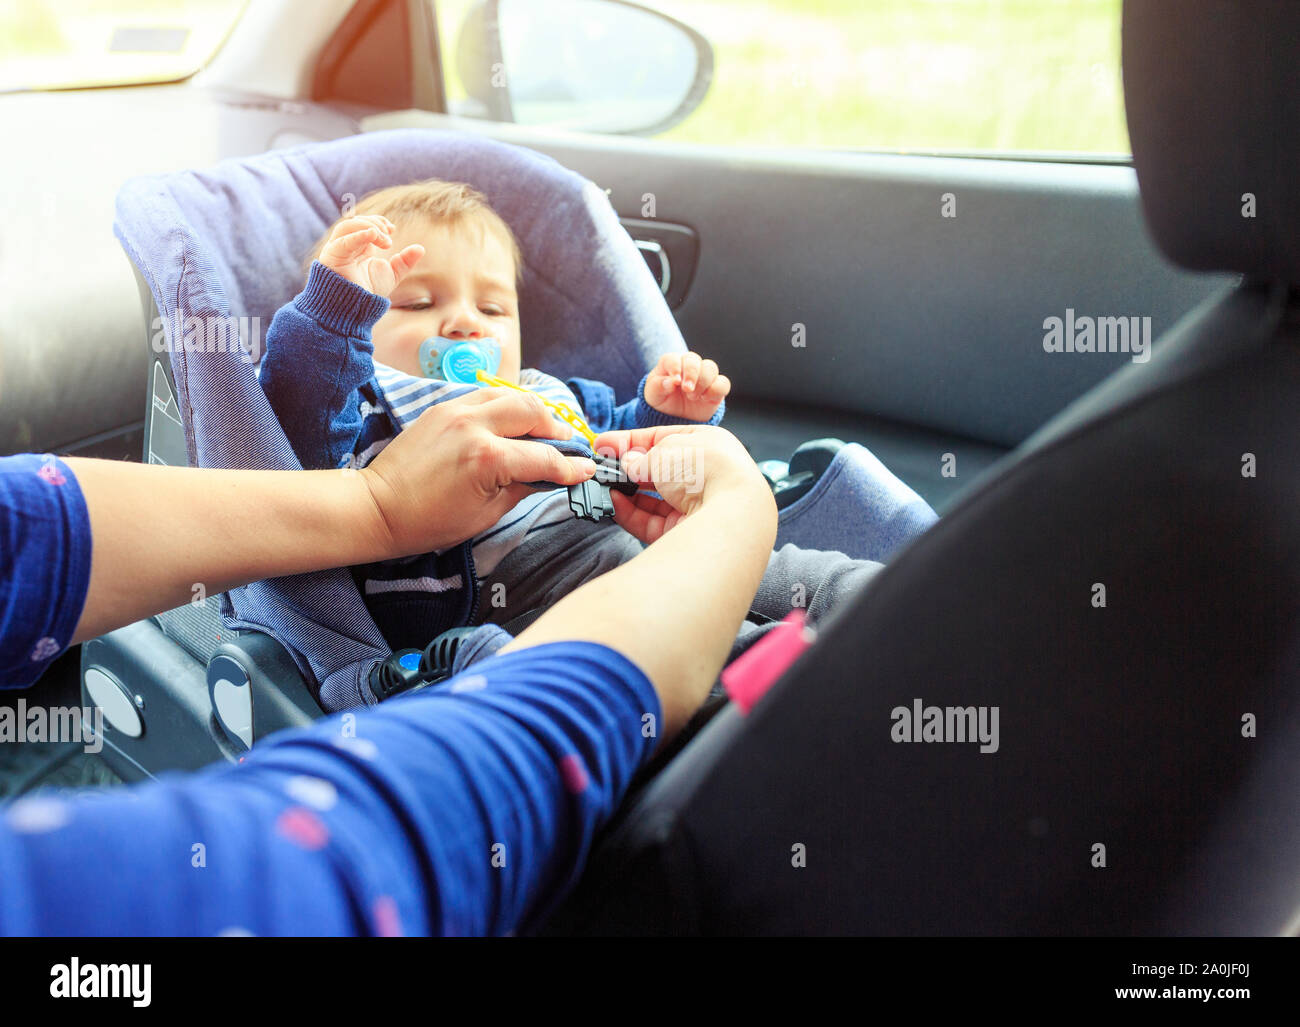 Kinder Auto Stuhl. Baby Autositz für Sicherheit. Schutz im Auto